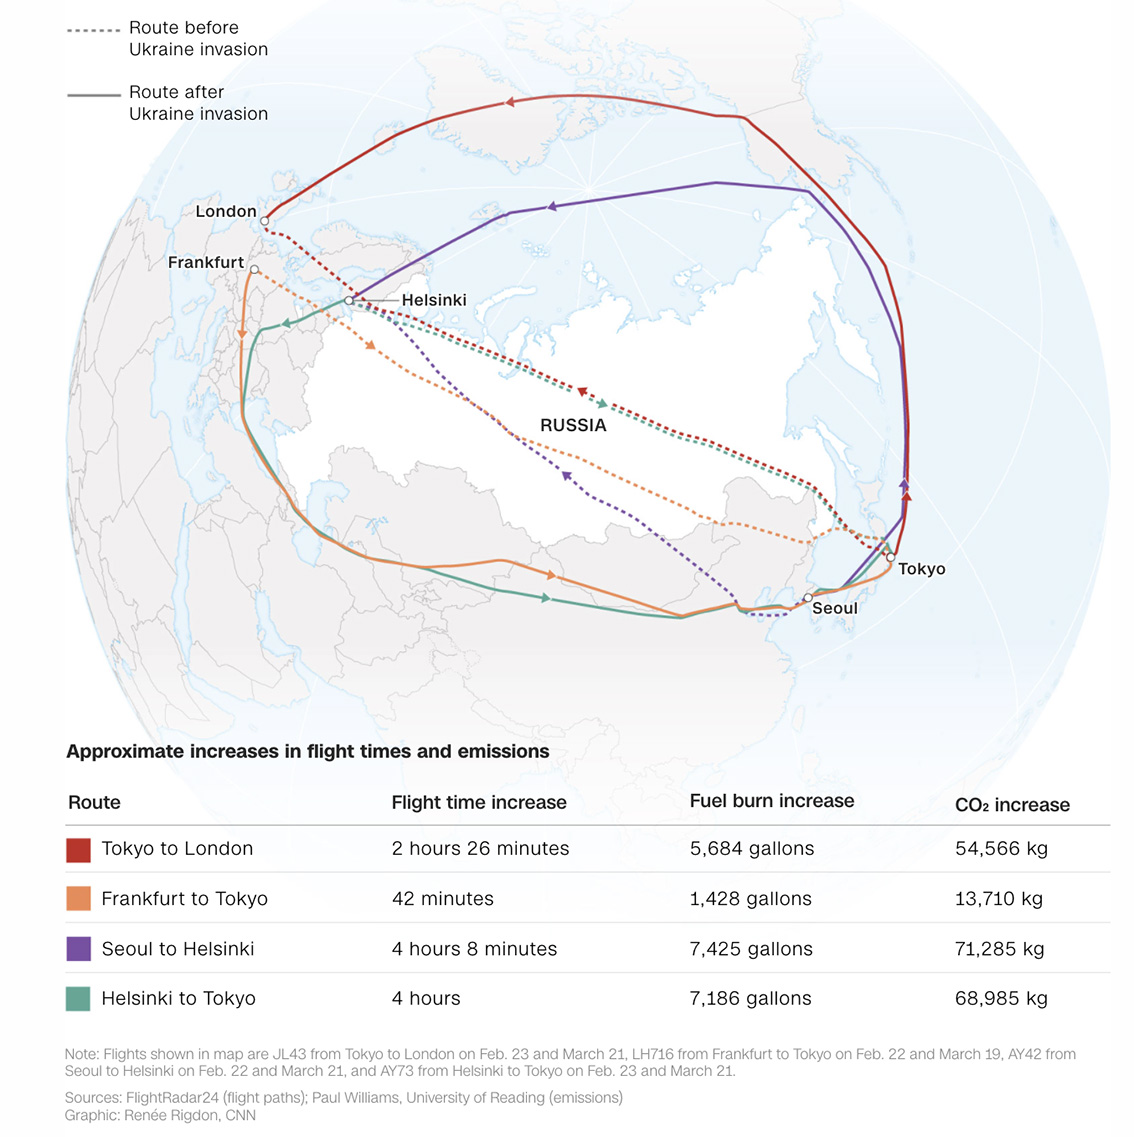 Οι πτήσεις κάνουν τεράστιες «παρακάμψεις» γύρω από τον ρωσικό εναέριο χώρο. Τι σημαίνει αυτό για την κλιματική κρίση;